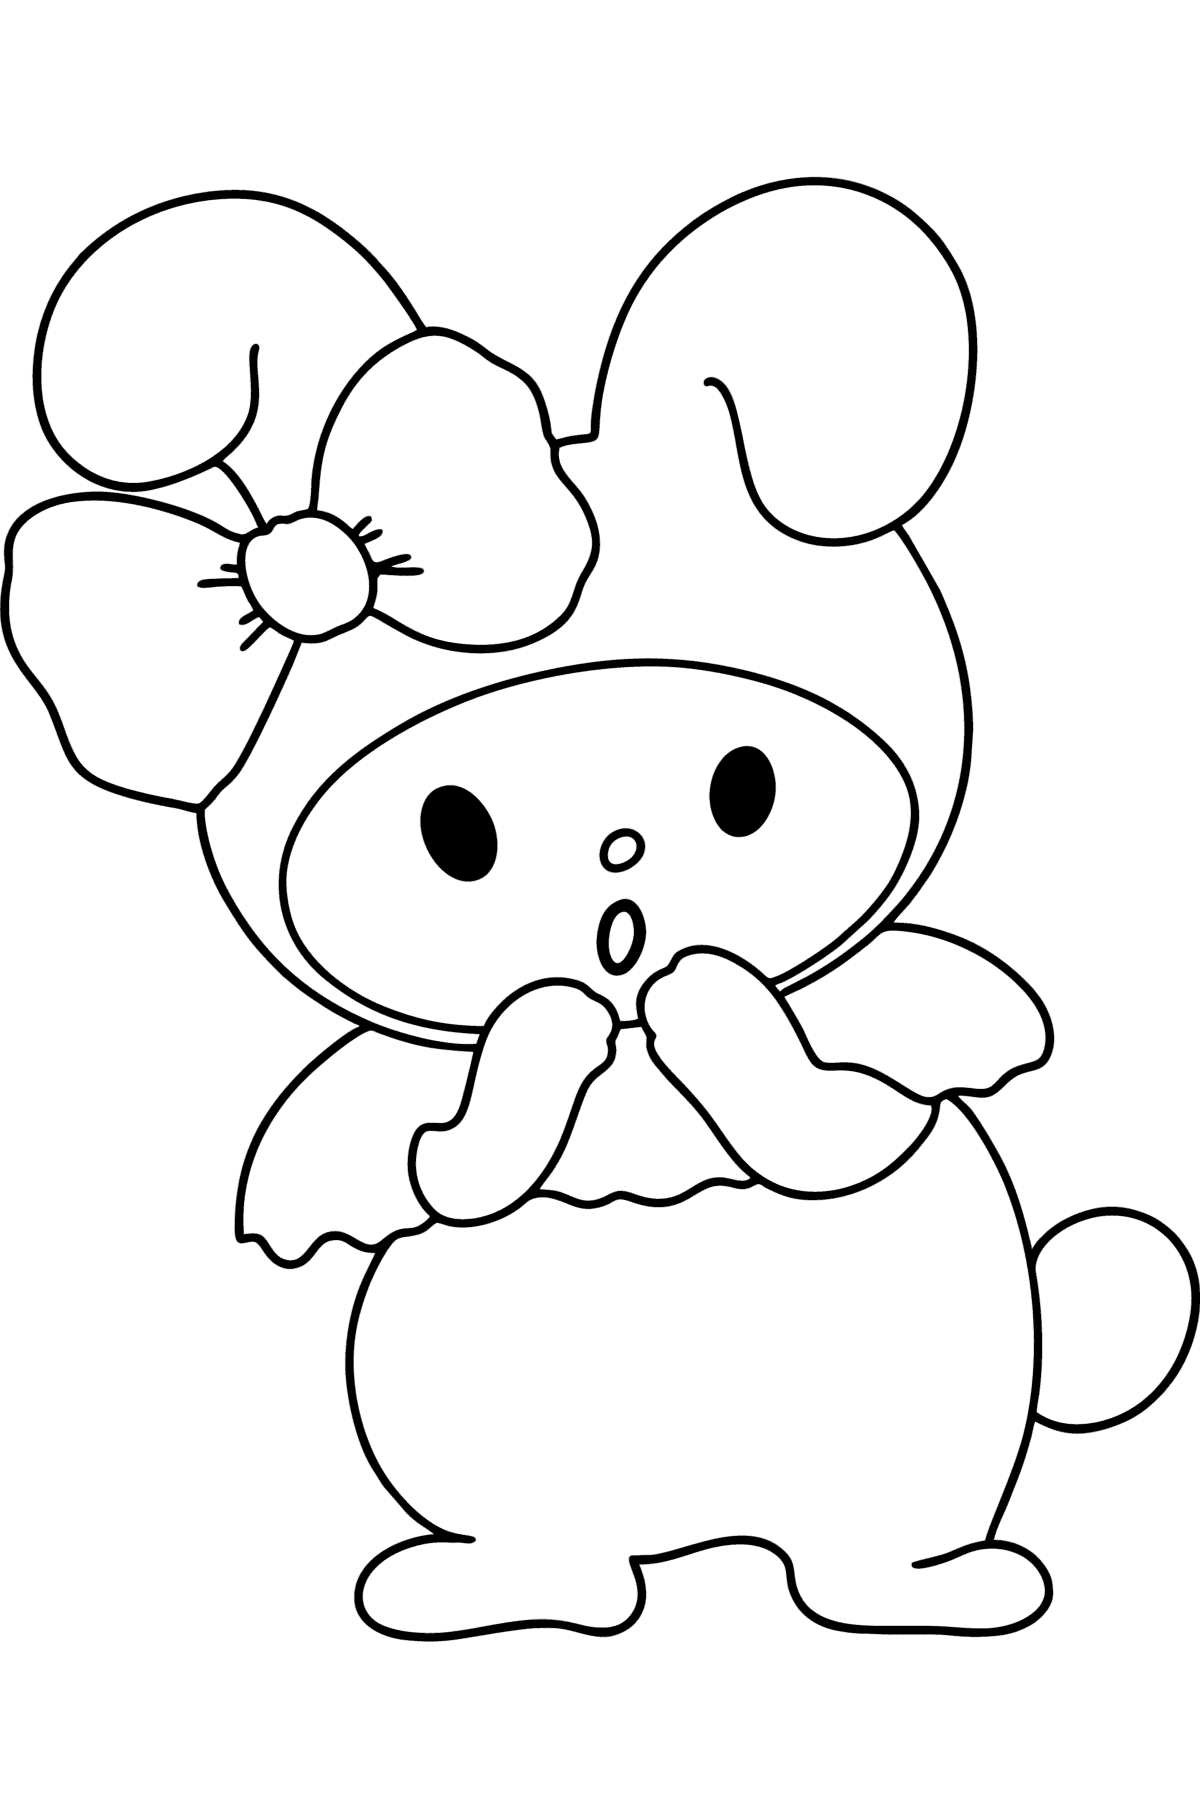 Раскраска Кролик Мелоди - Картинки для Детей